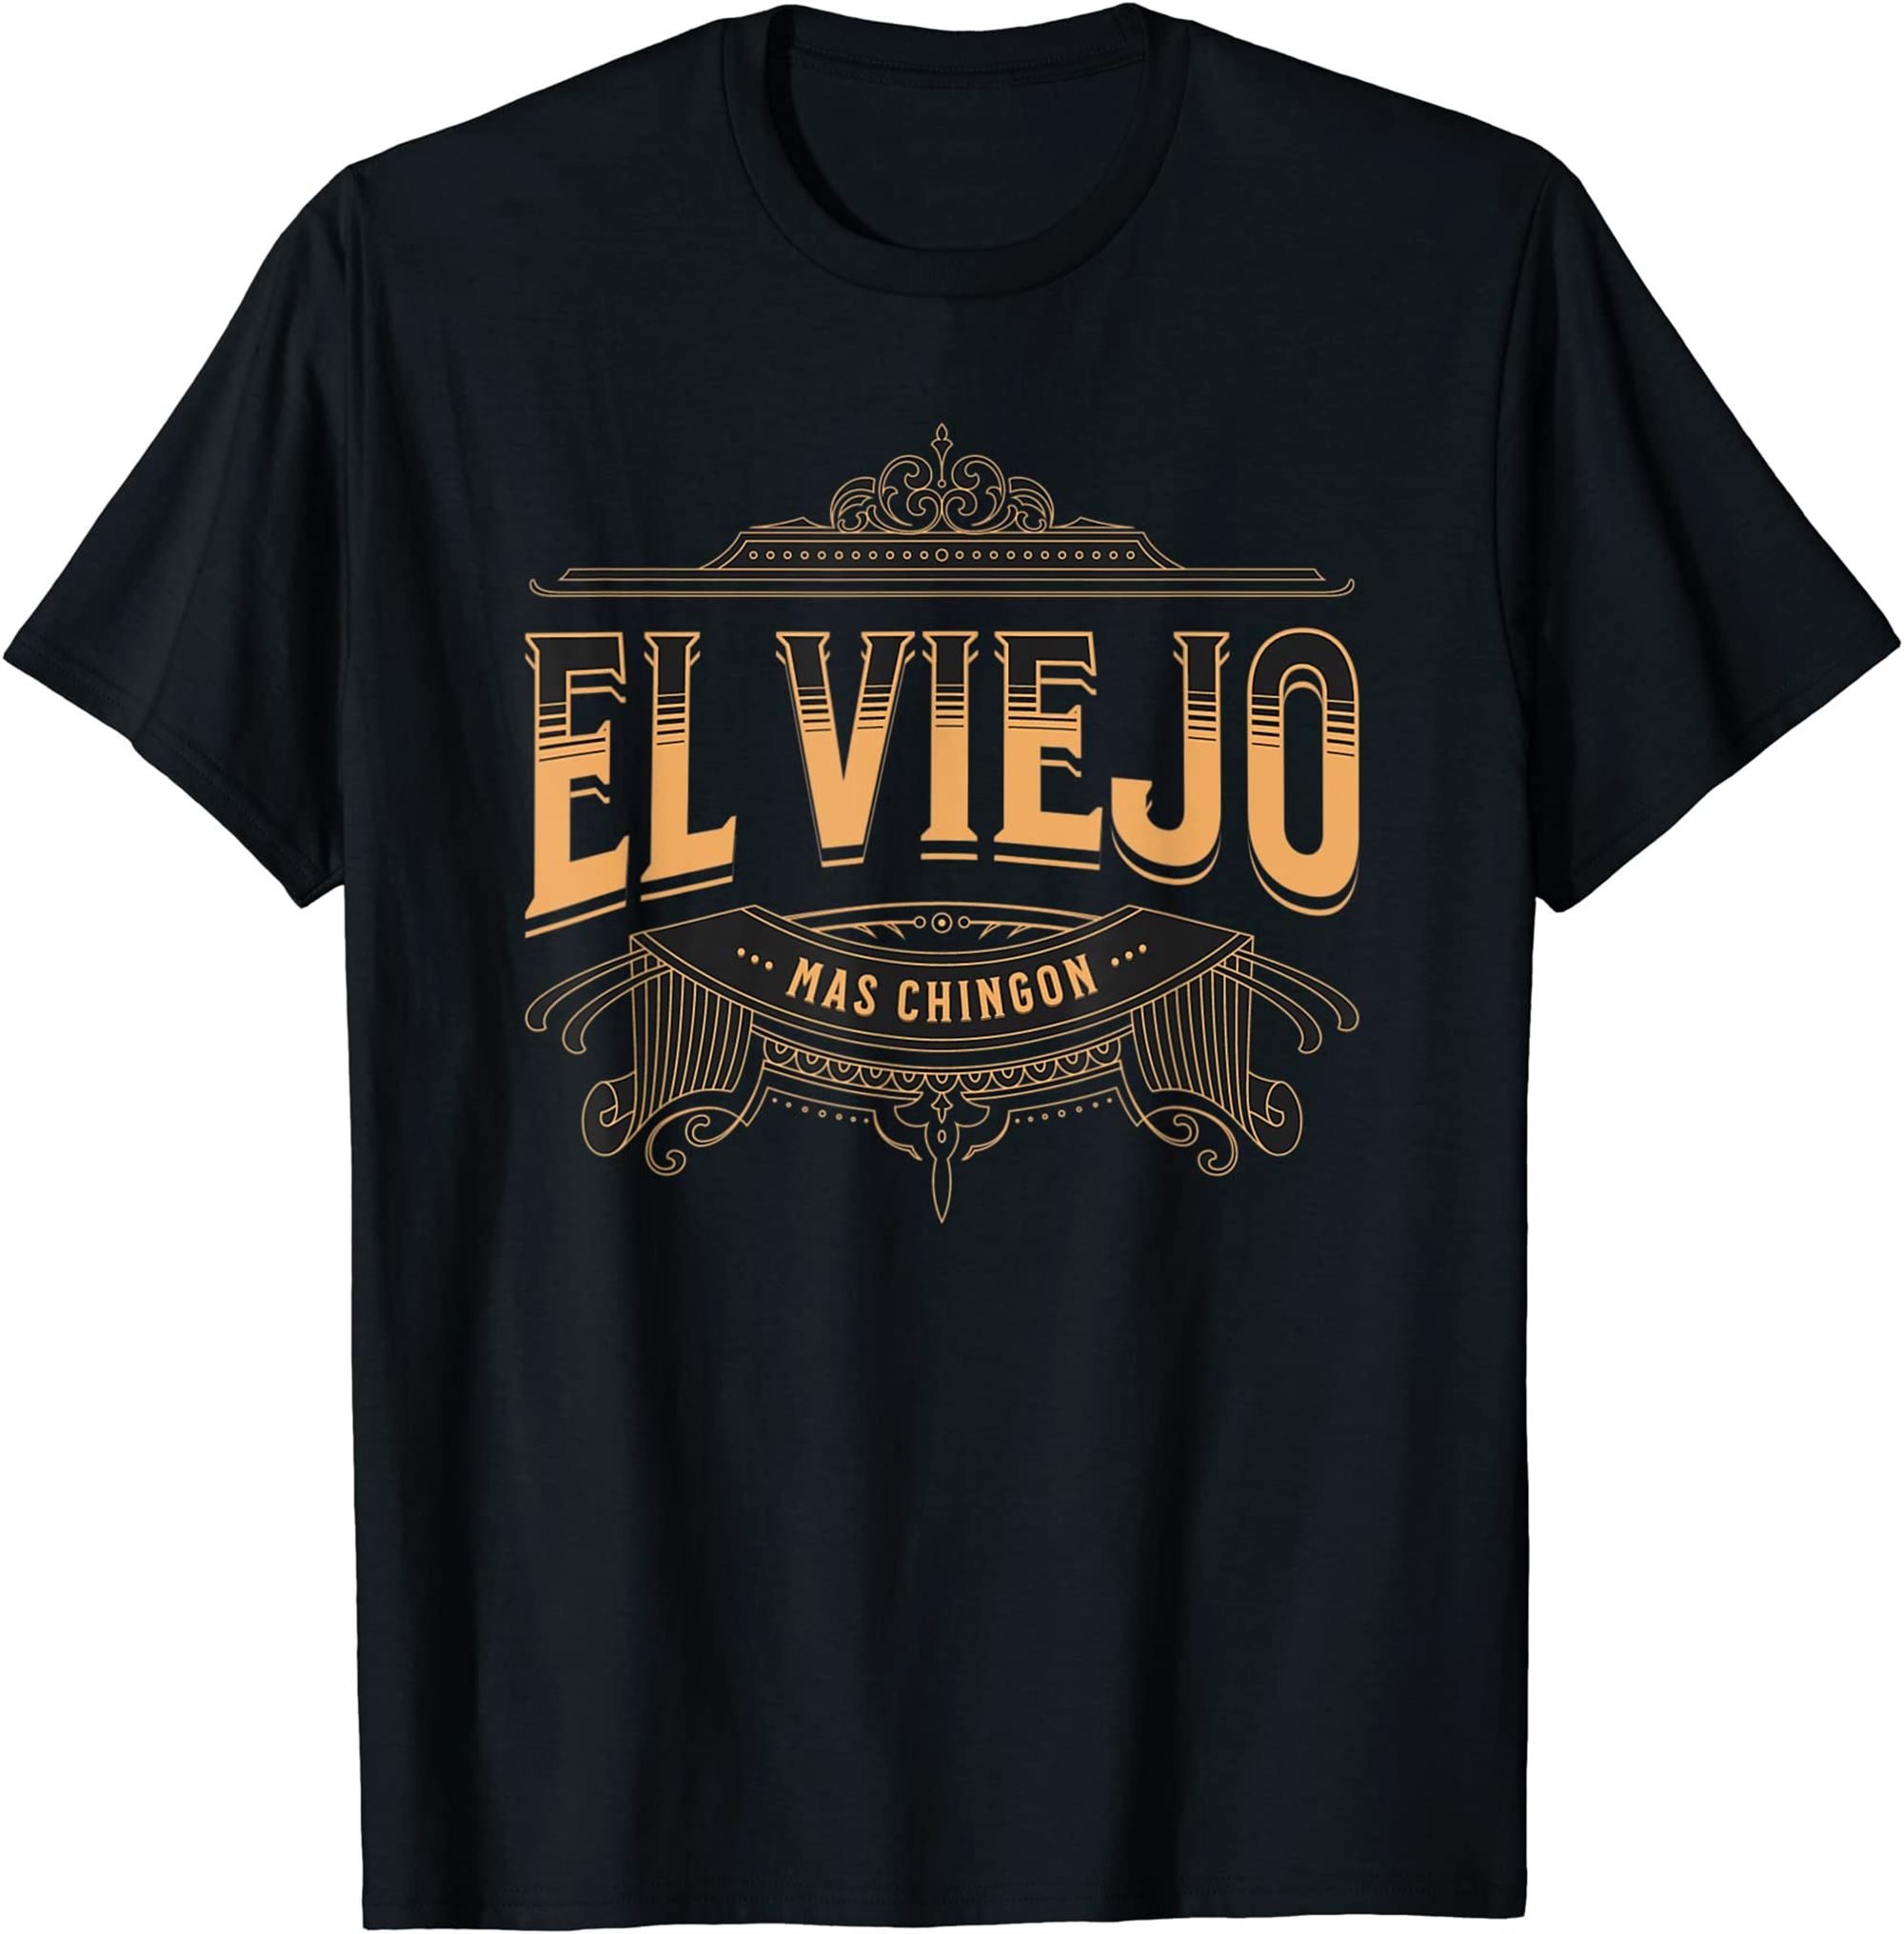 Mens El Viejo Mas Chingon T-shirt Full Size Up To 5xl